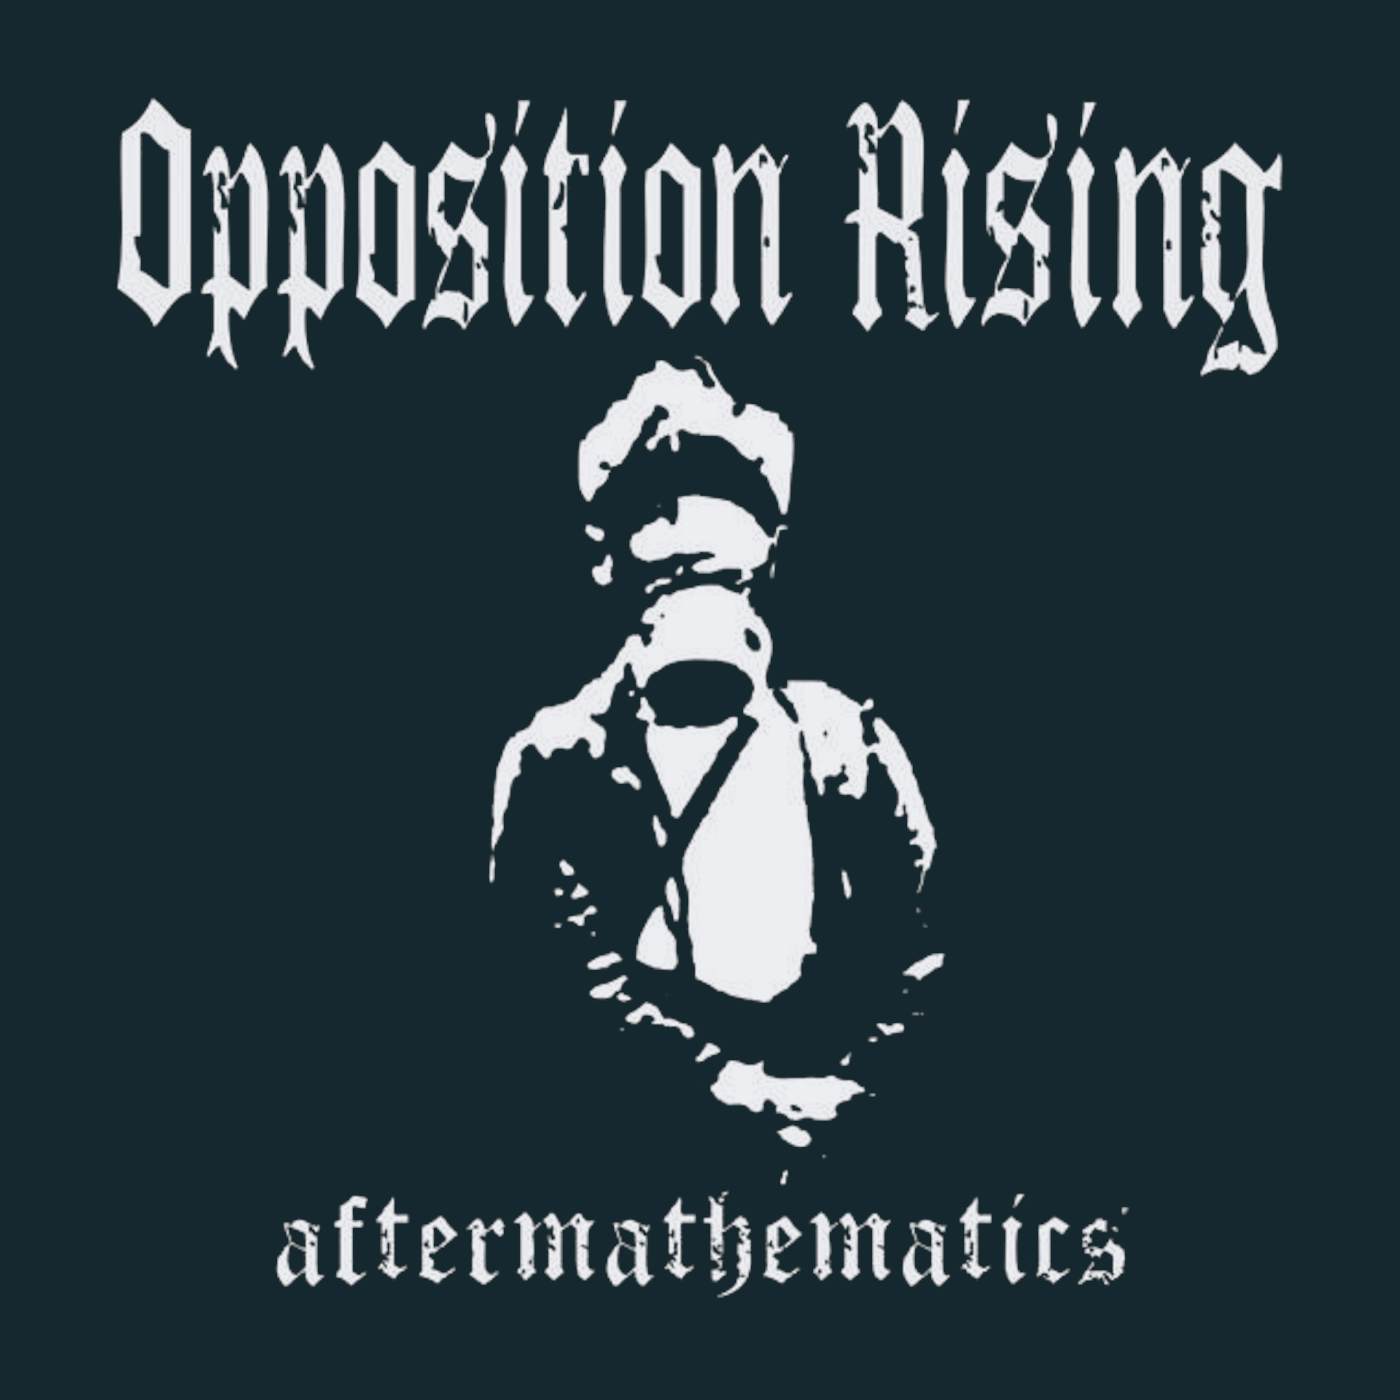 Opposition Rising